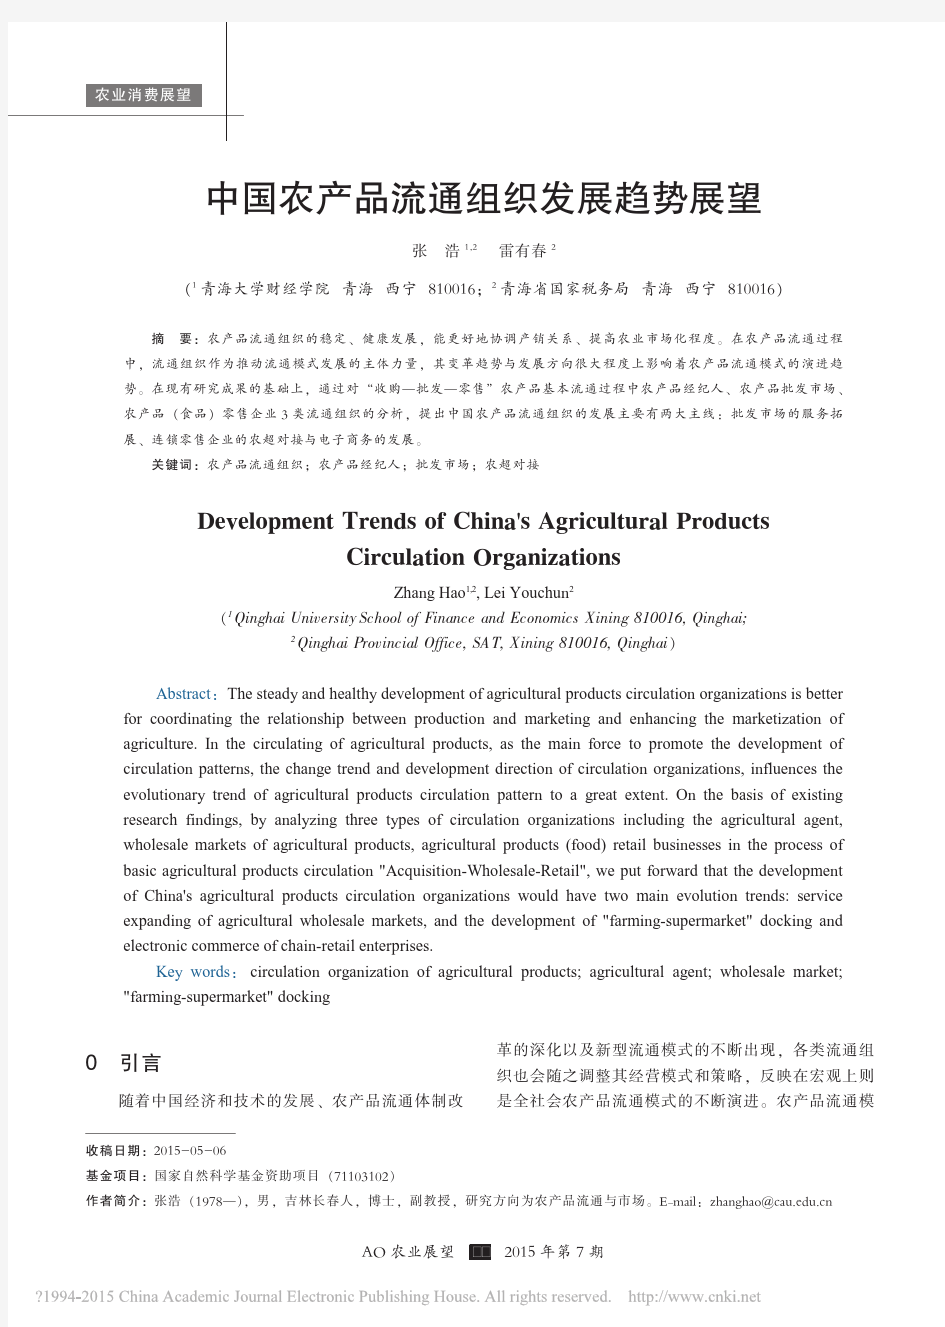 中国农产品流通组织发展趋势展望